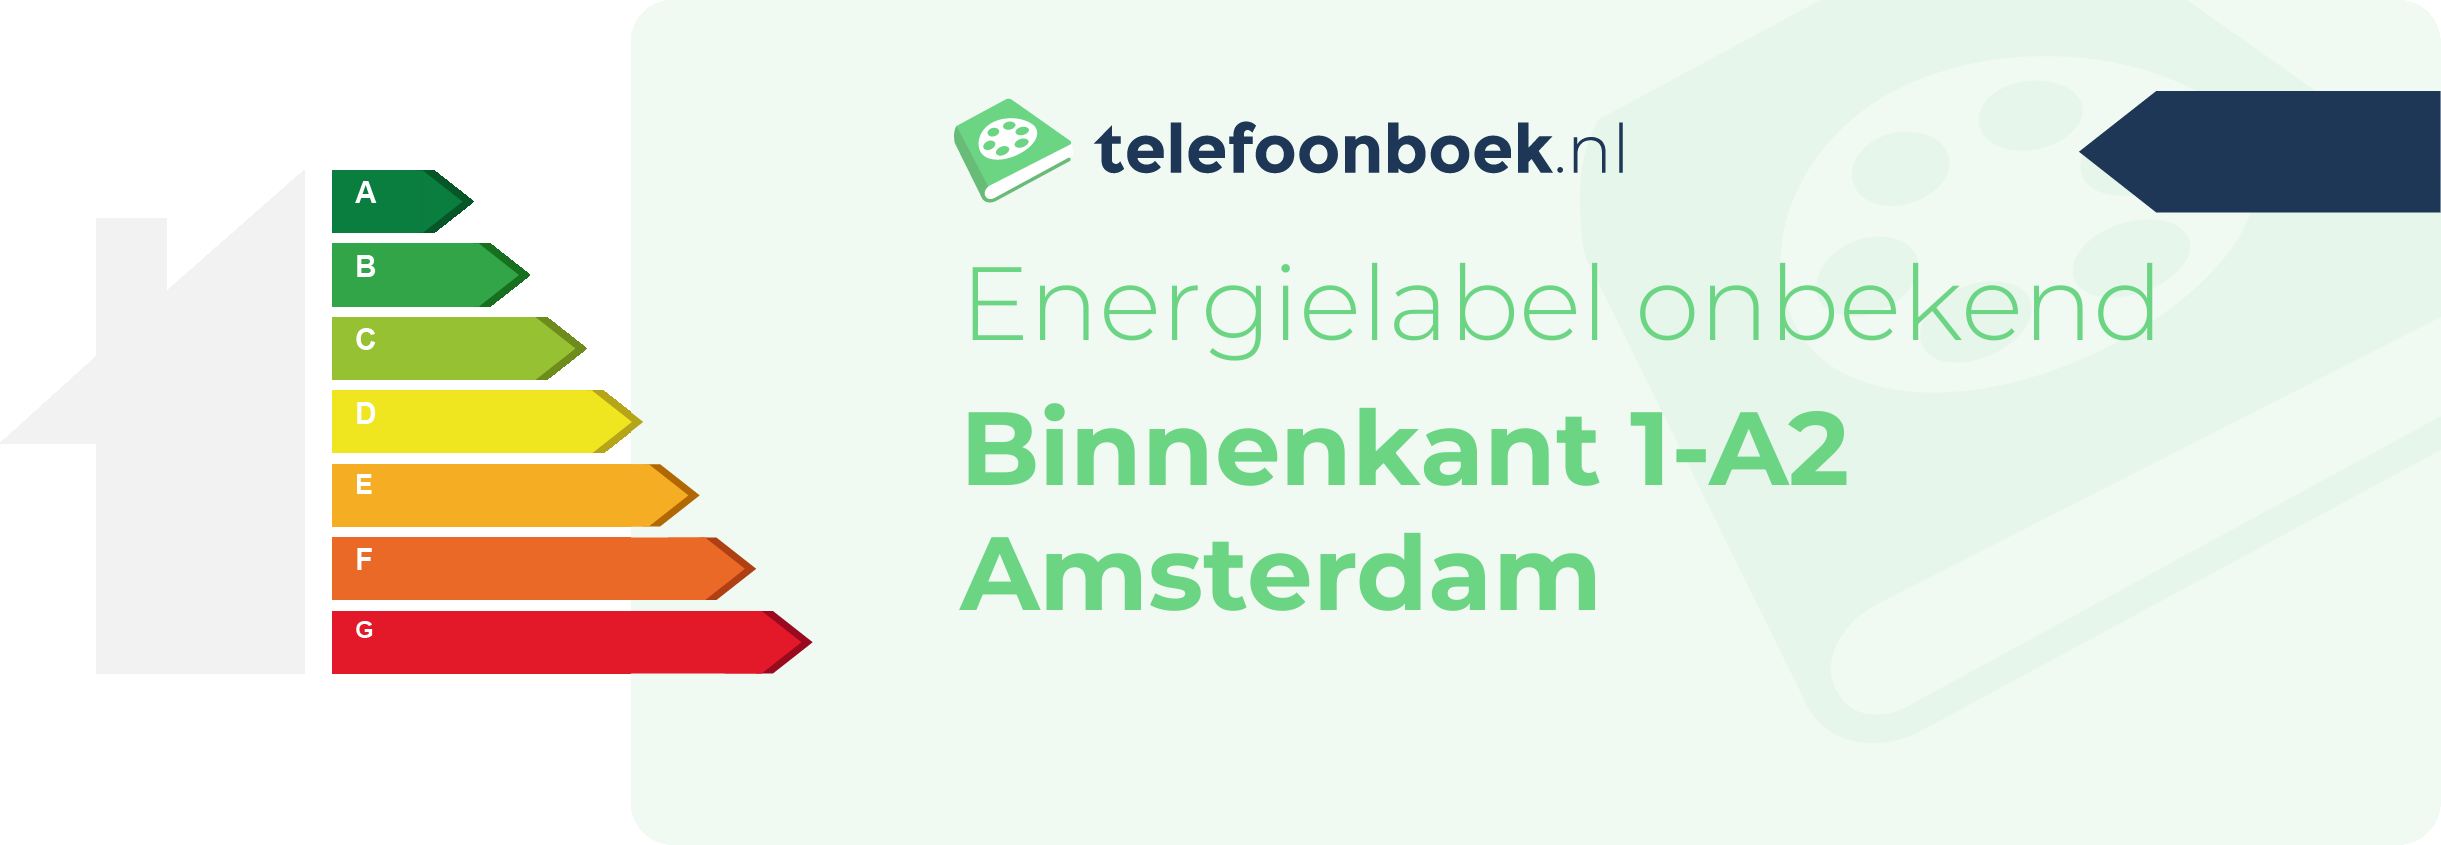 Energielabel Binnenkant 1-A2 Amsterdam